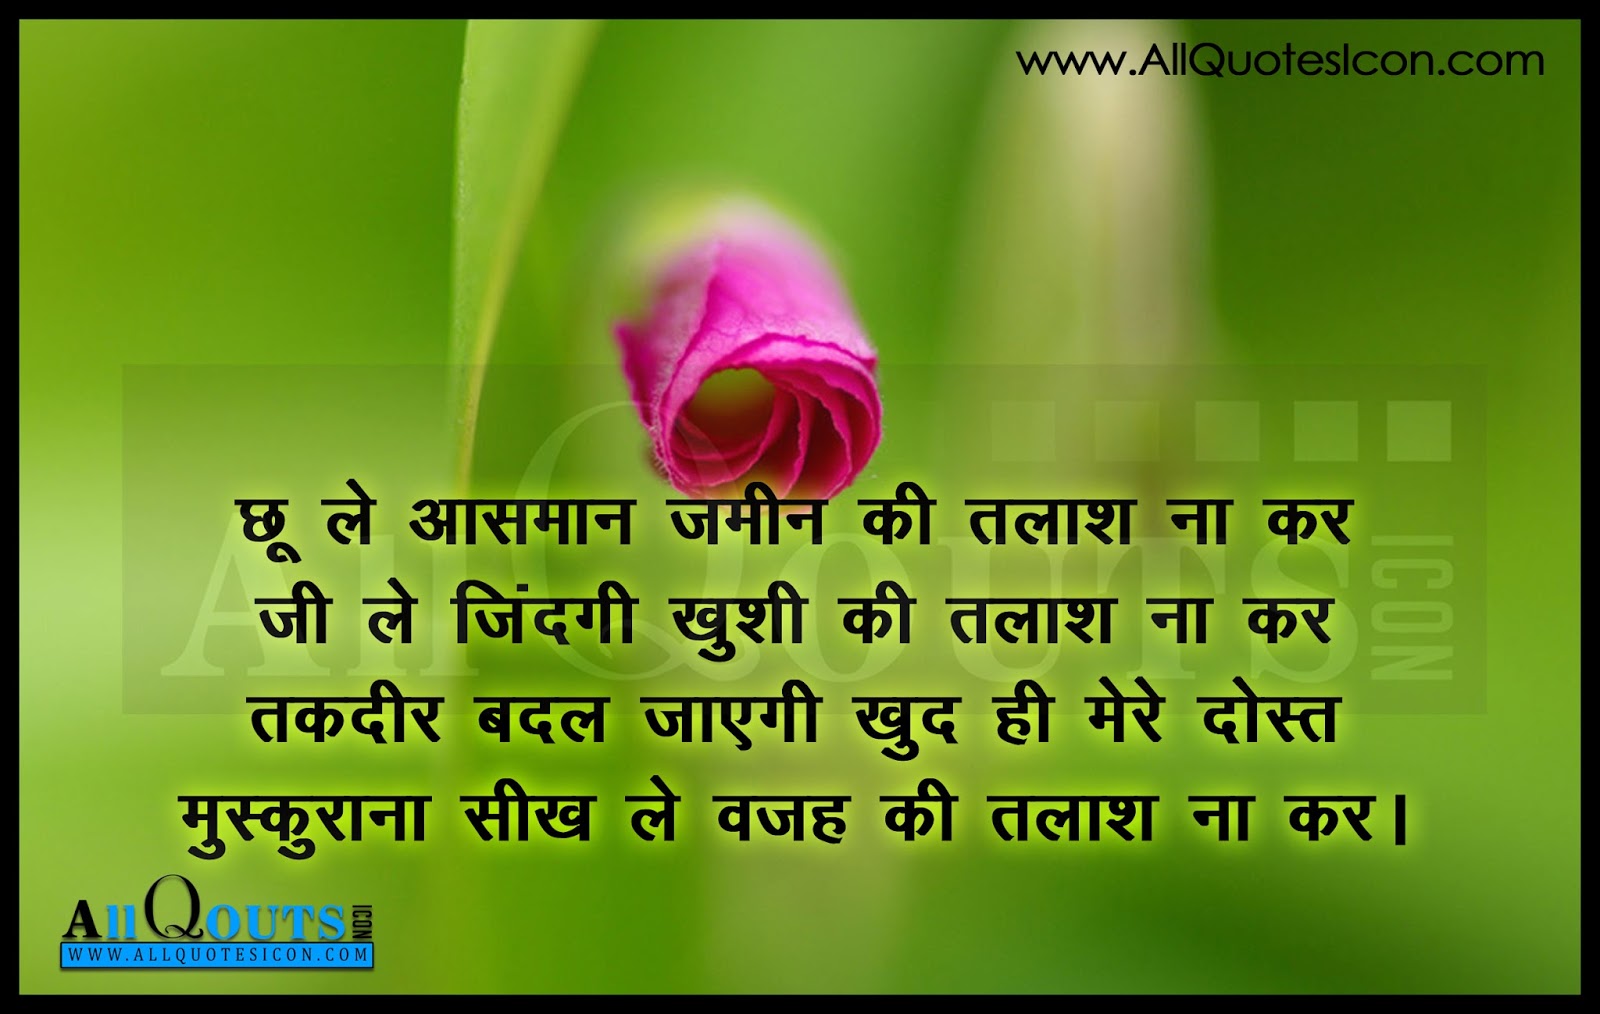 Inspiration Quotes Hindi 1 JPG 16001014 Hindi Quotes Pinterest